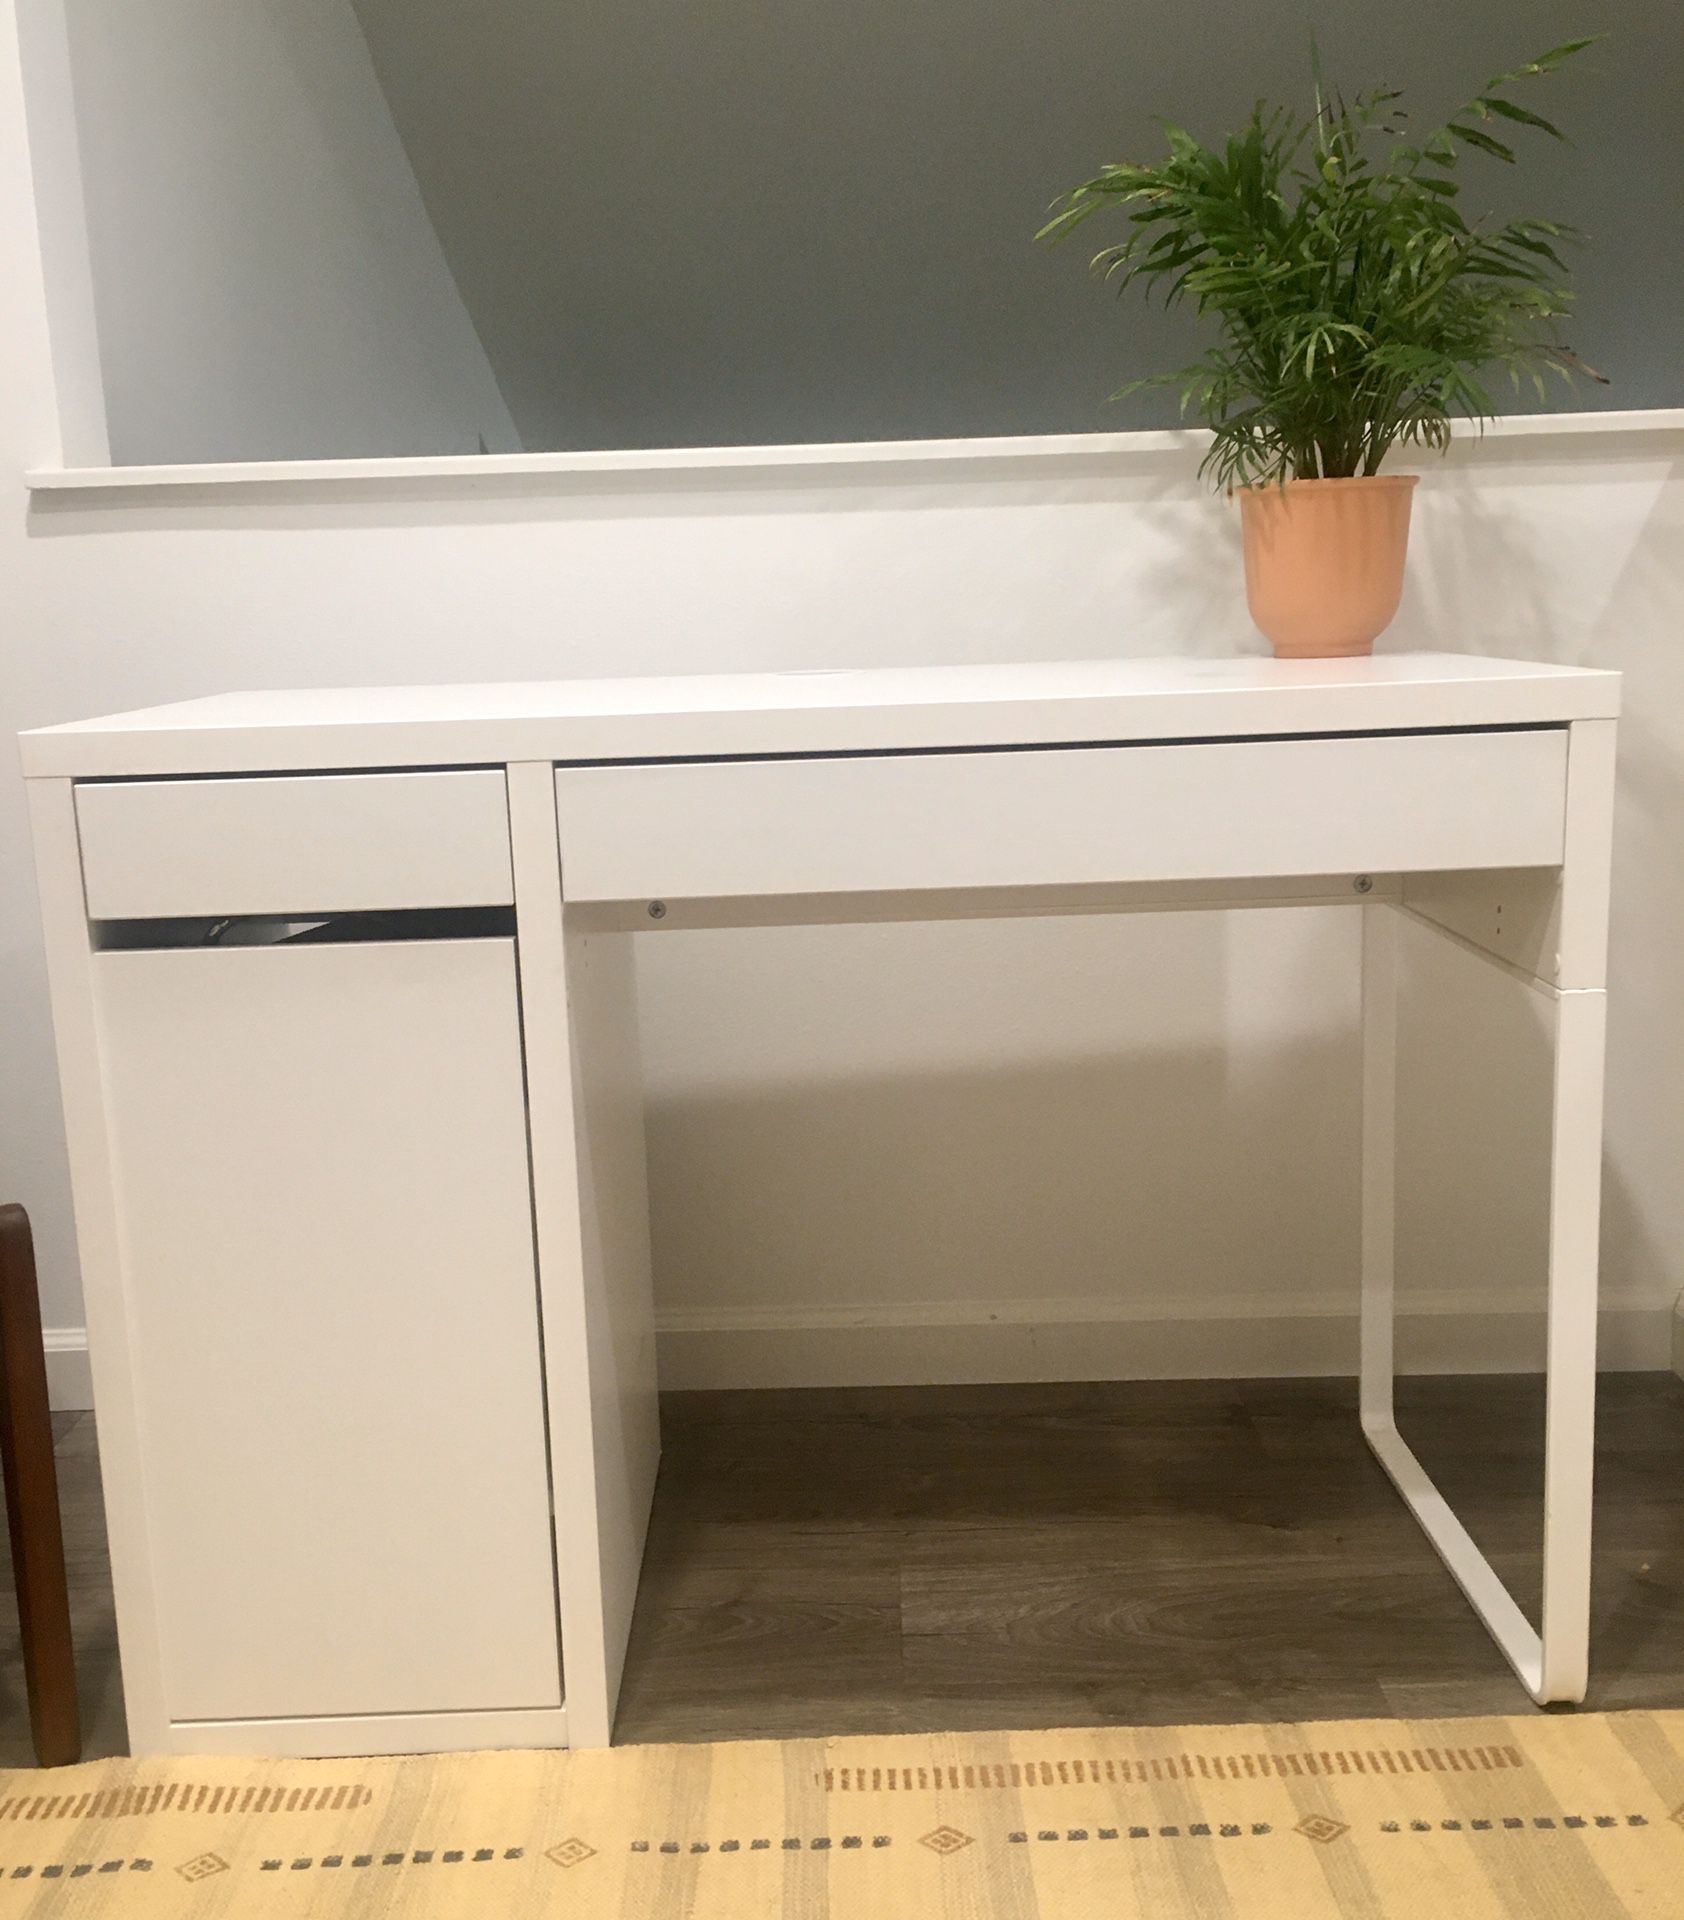 White IKEA Micke Desk